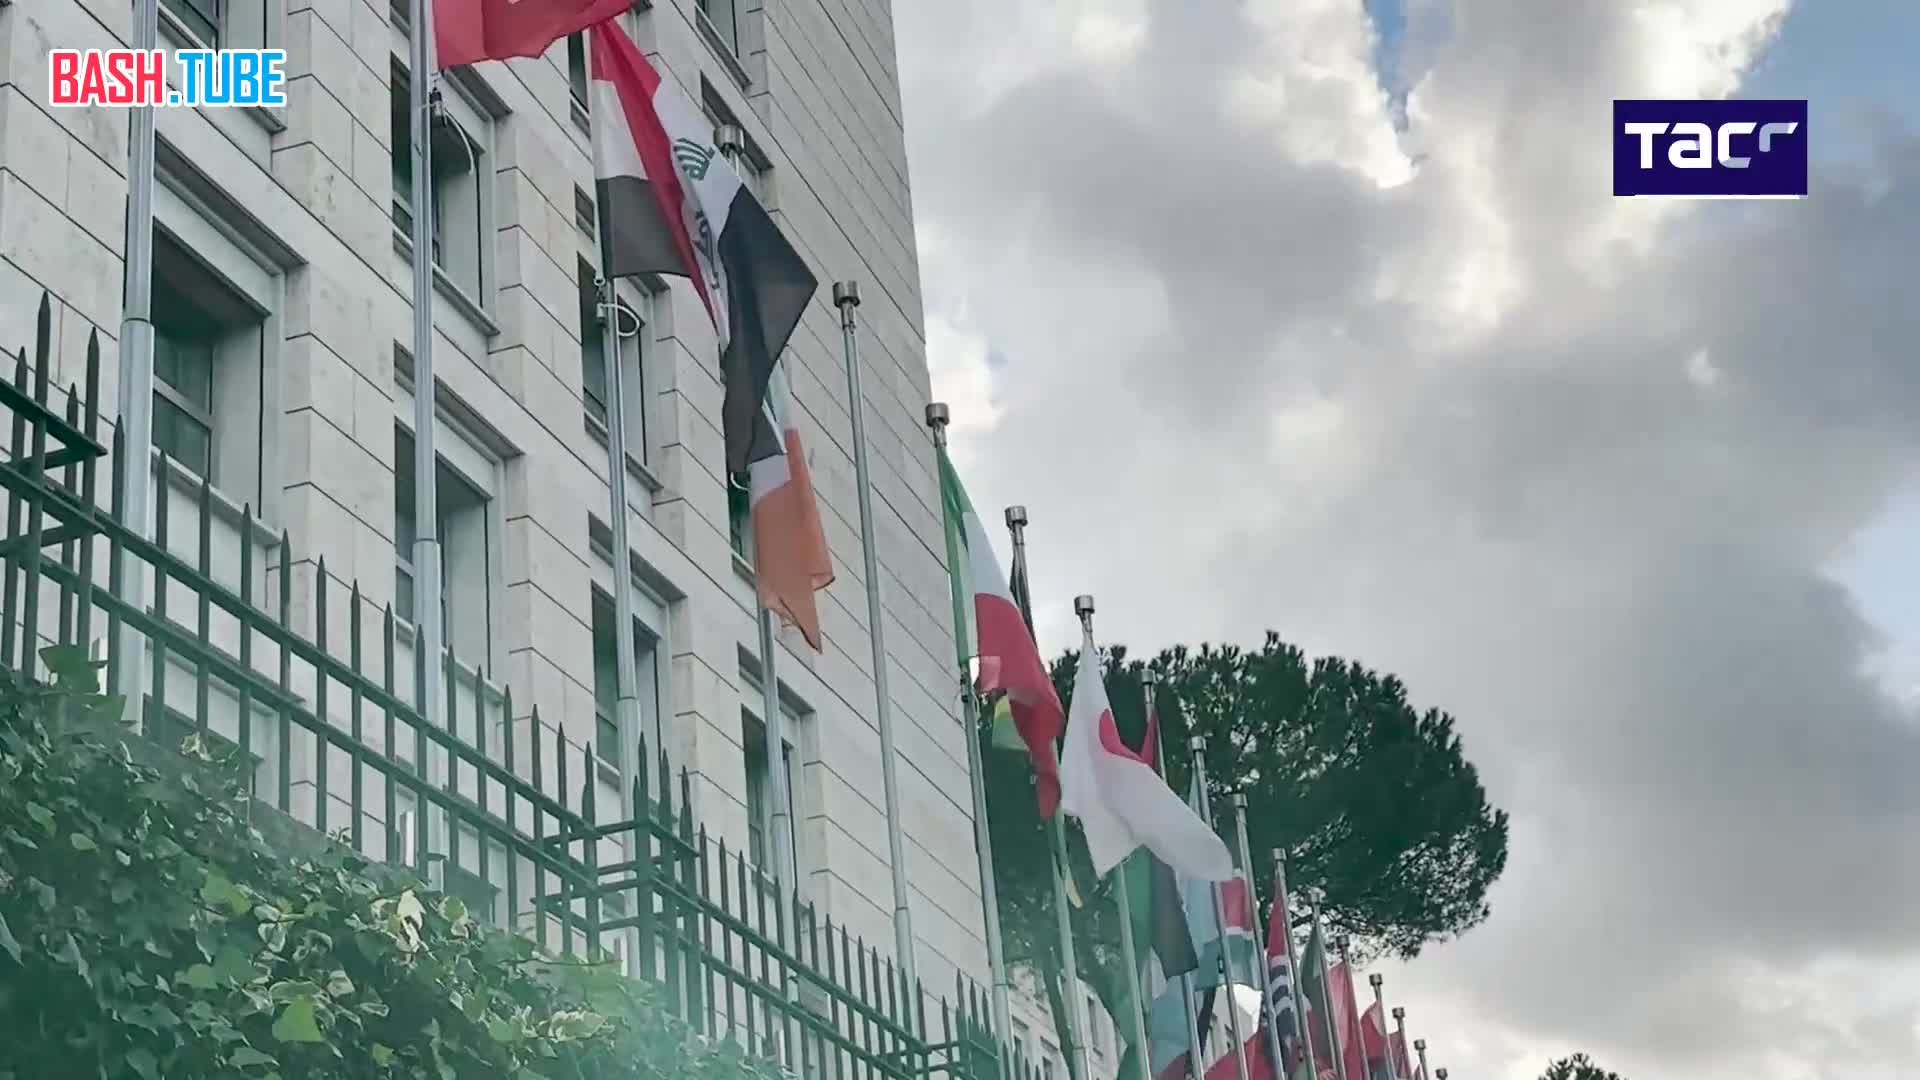  В Риме участник акции в поддержку Палестины сорвал флаг Израиля со штаб-квартиры ФАО